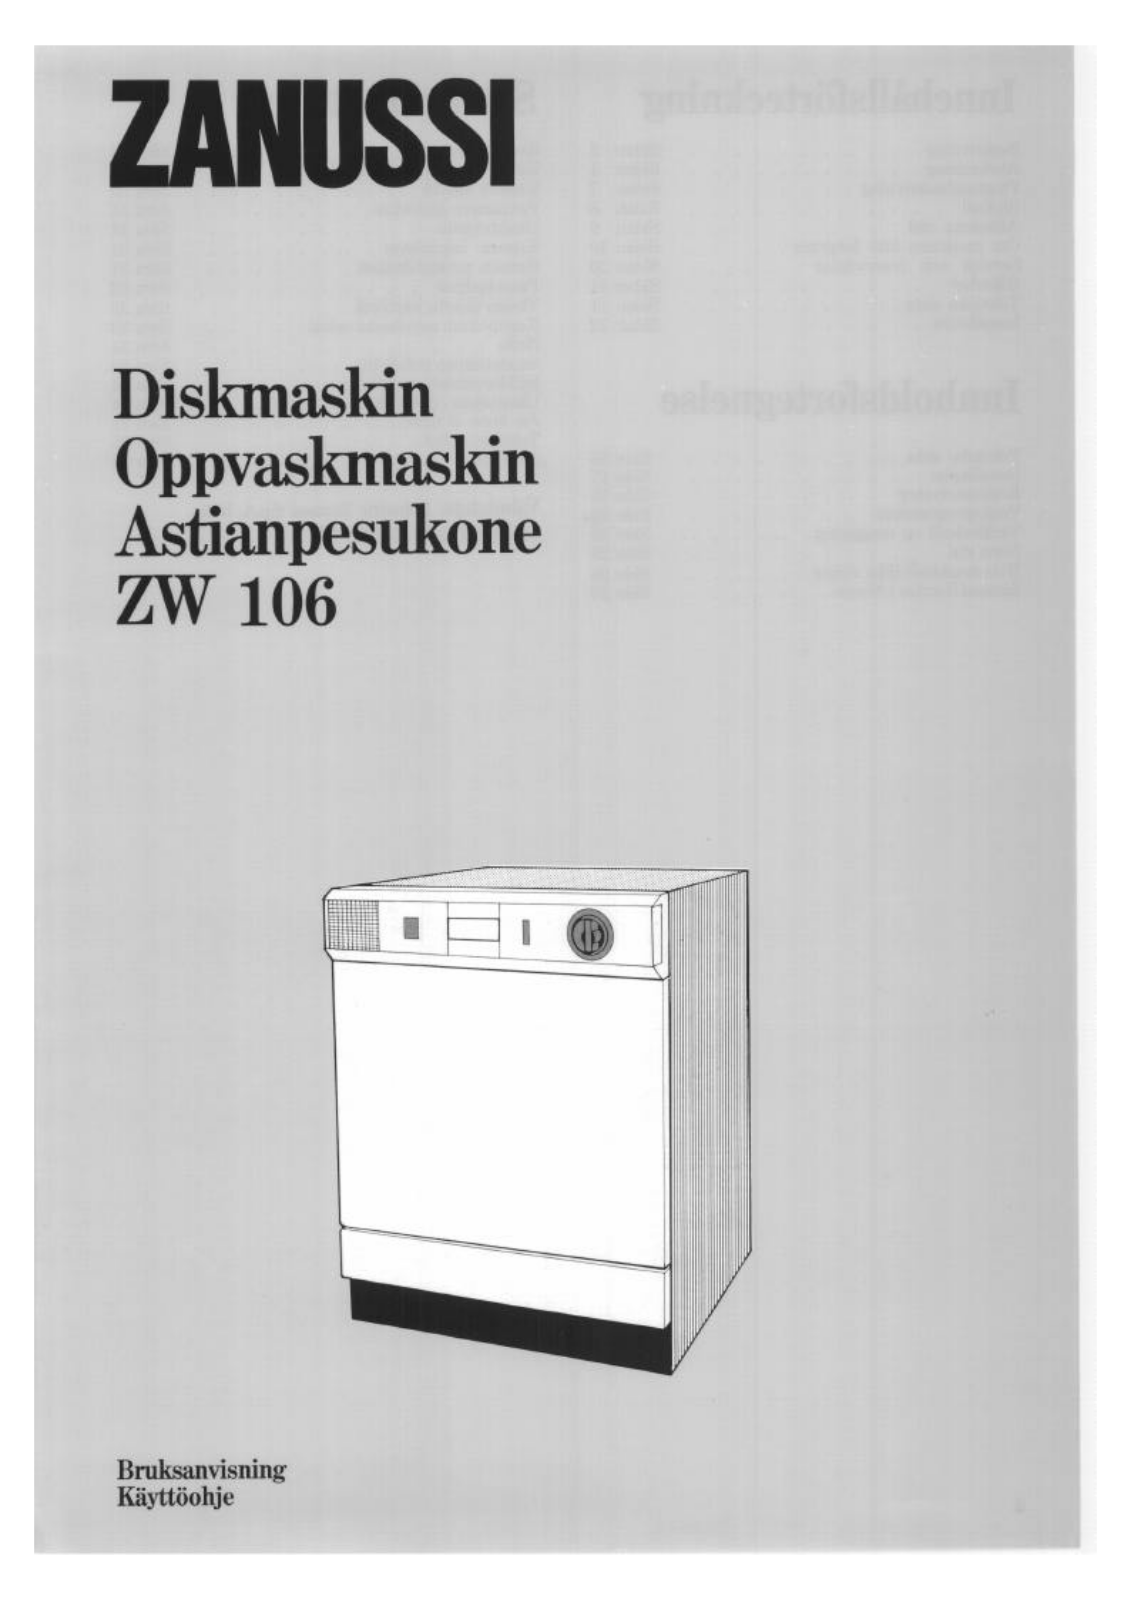 Zanussi ZW106 User Manual